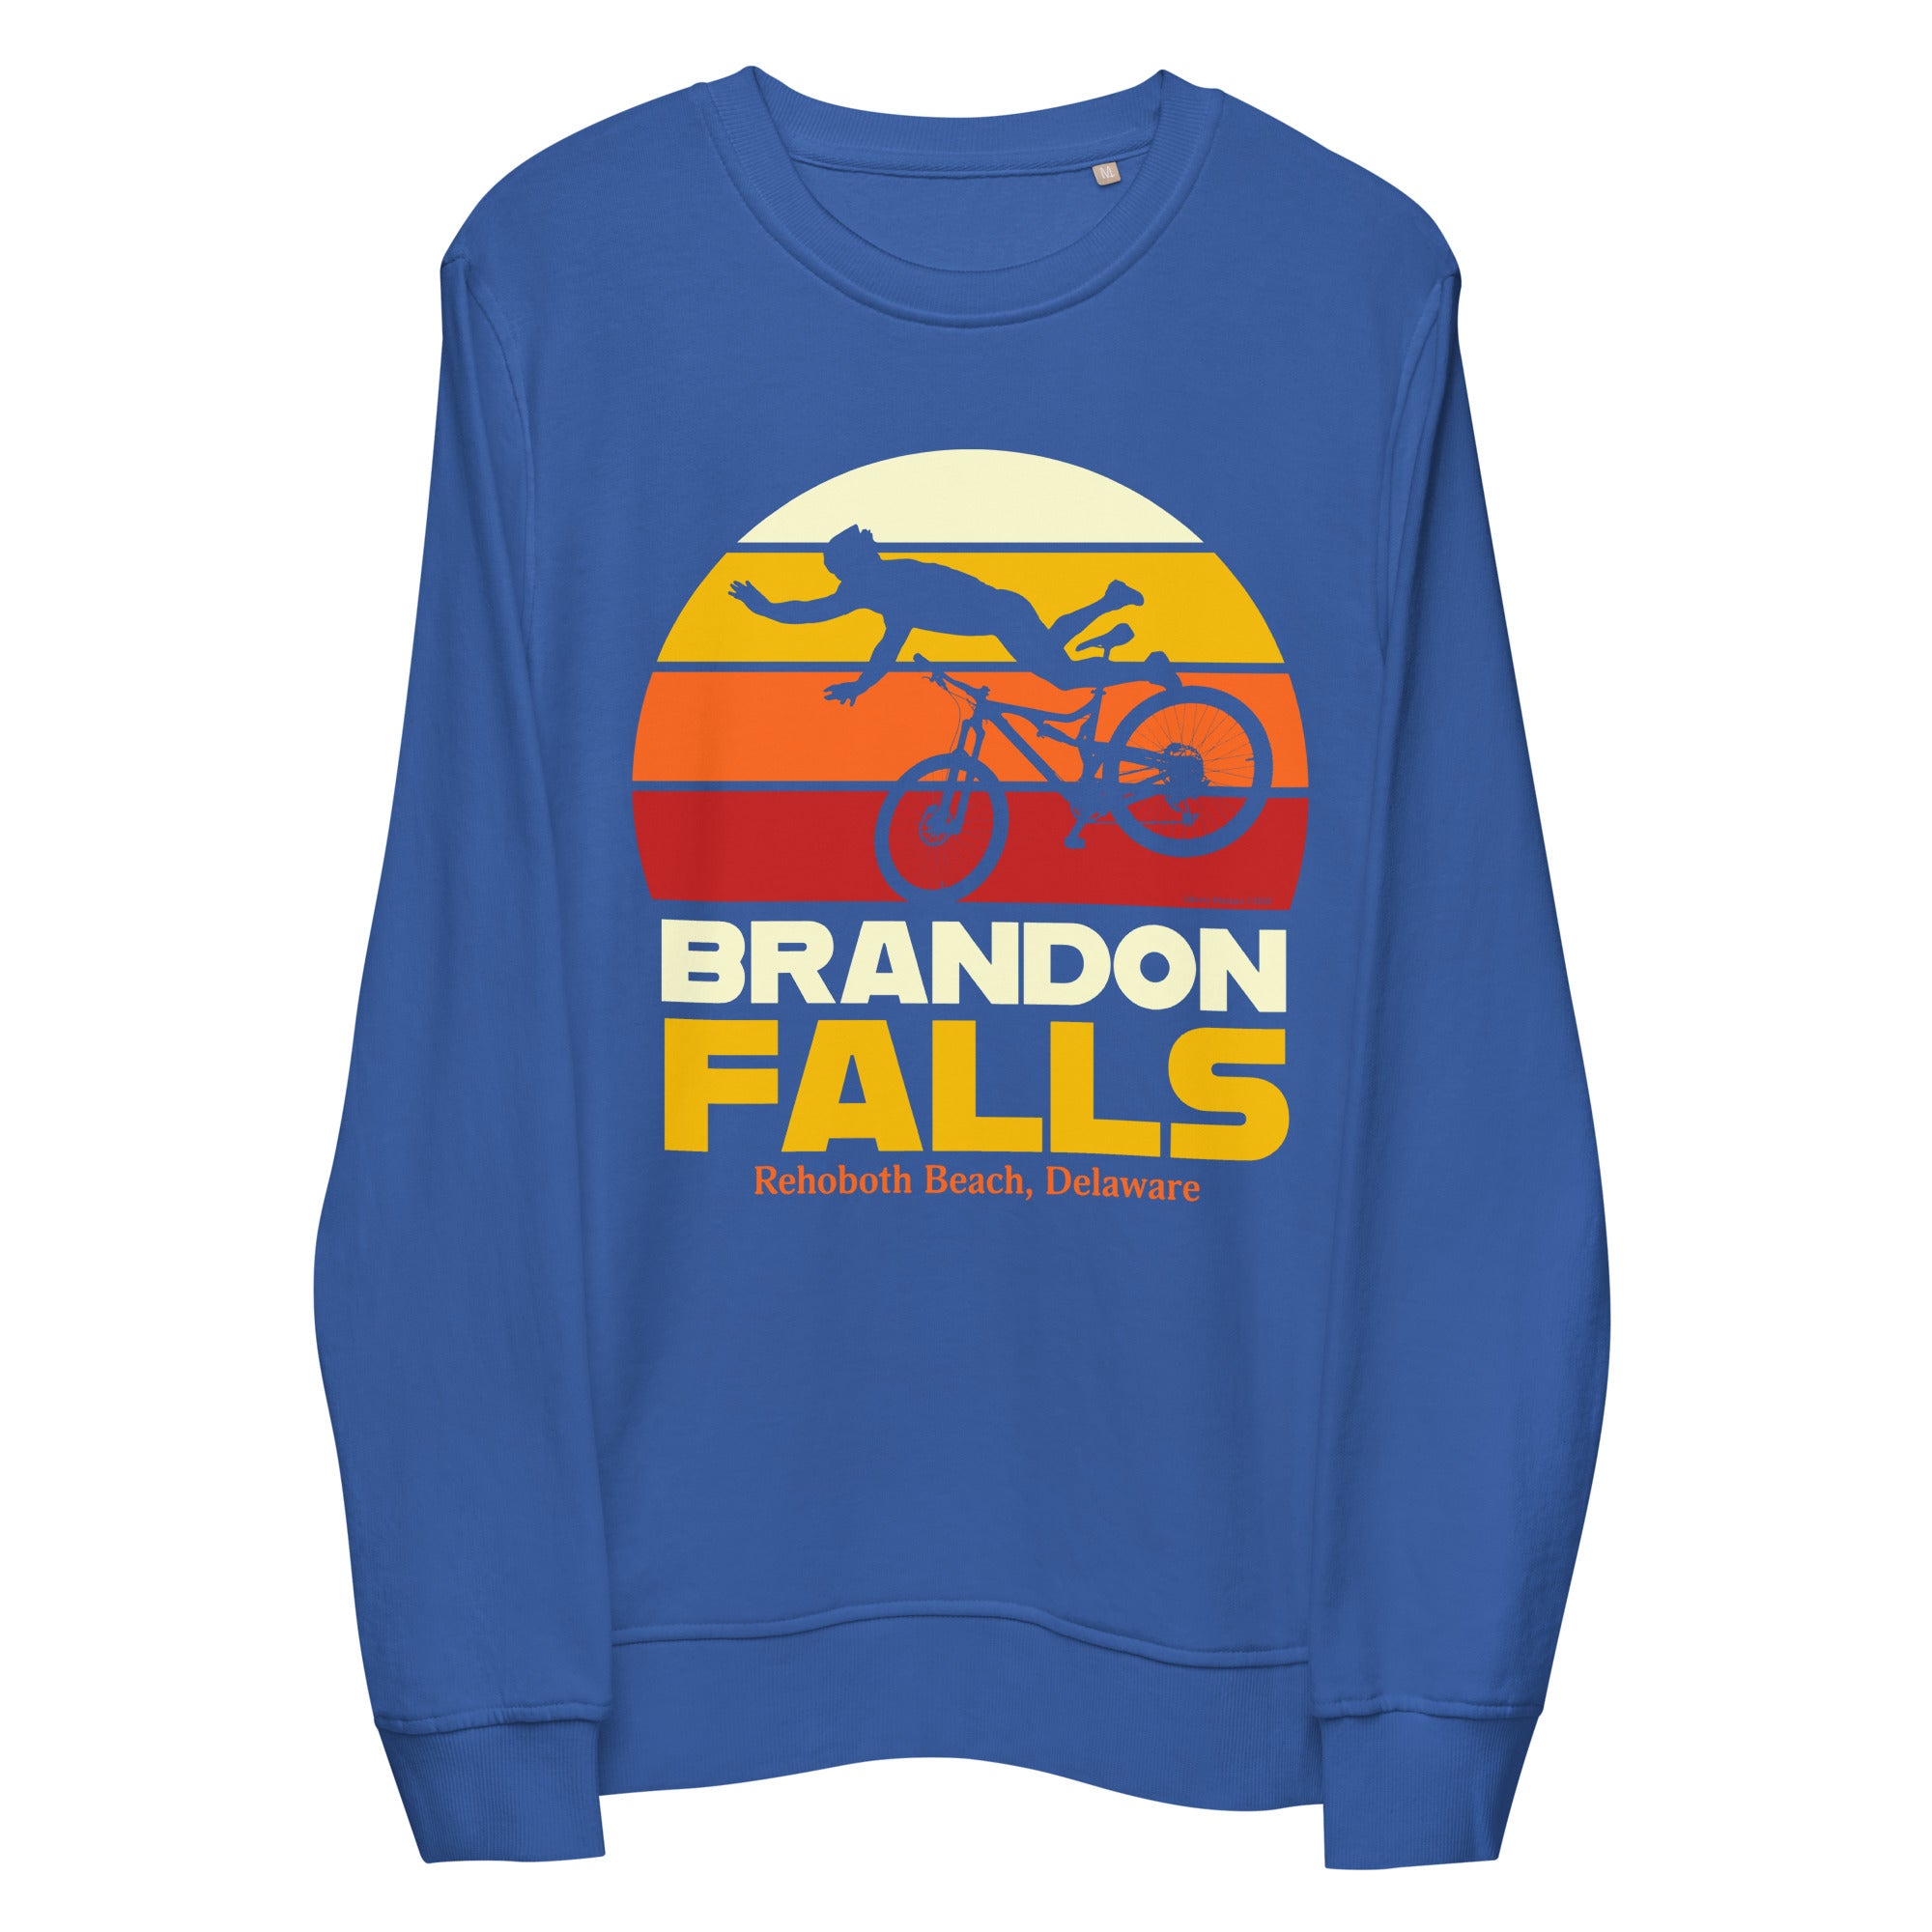 Brandon Falls Organic Sweatshirt